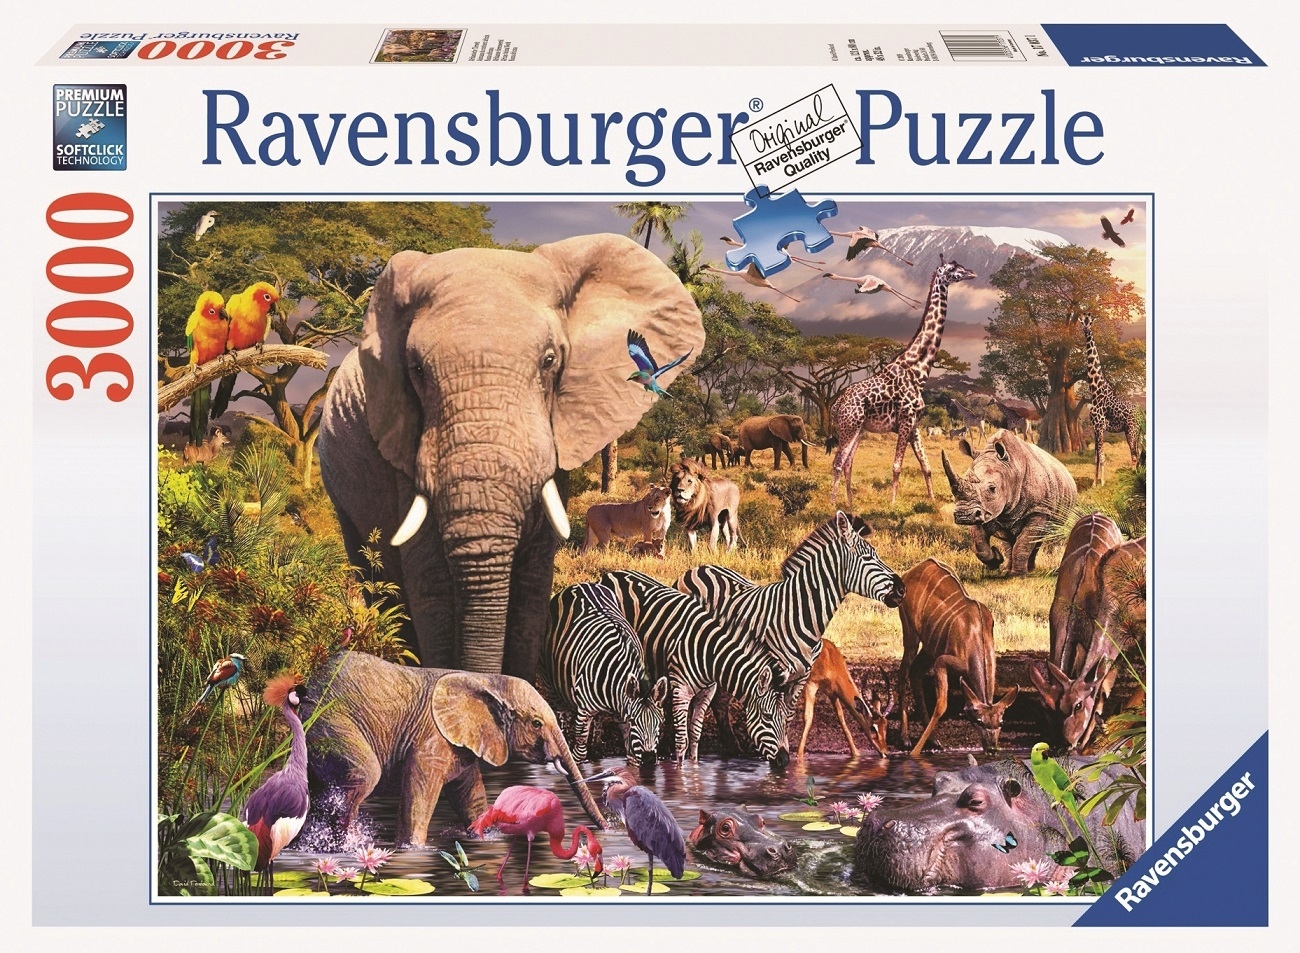 Wildlife World Safari Puzzle